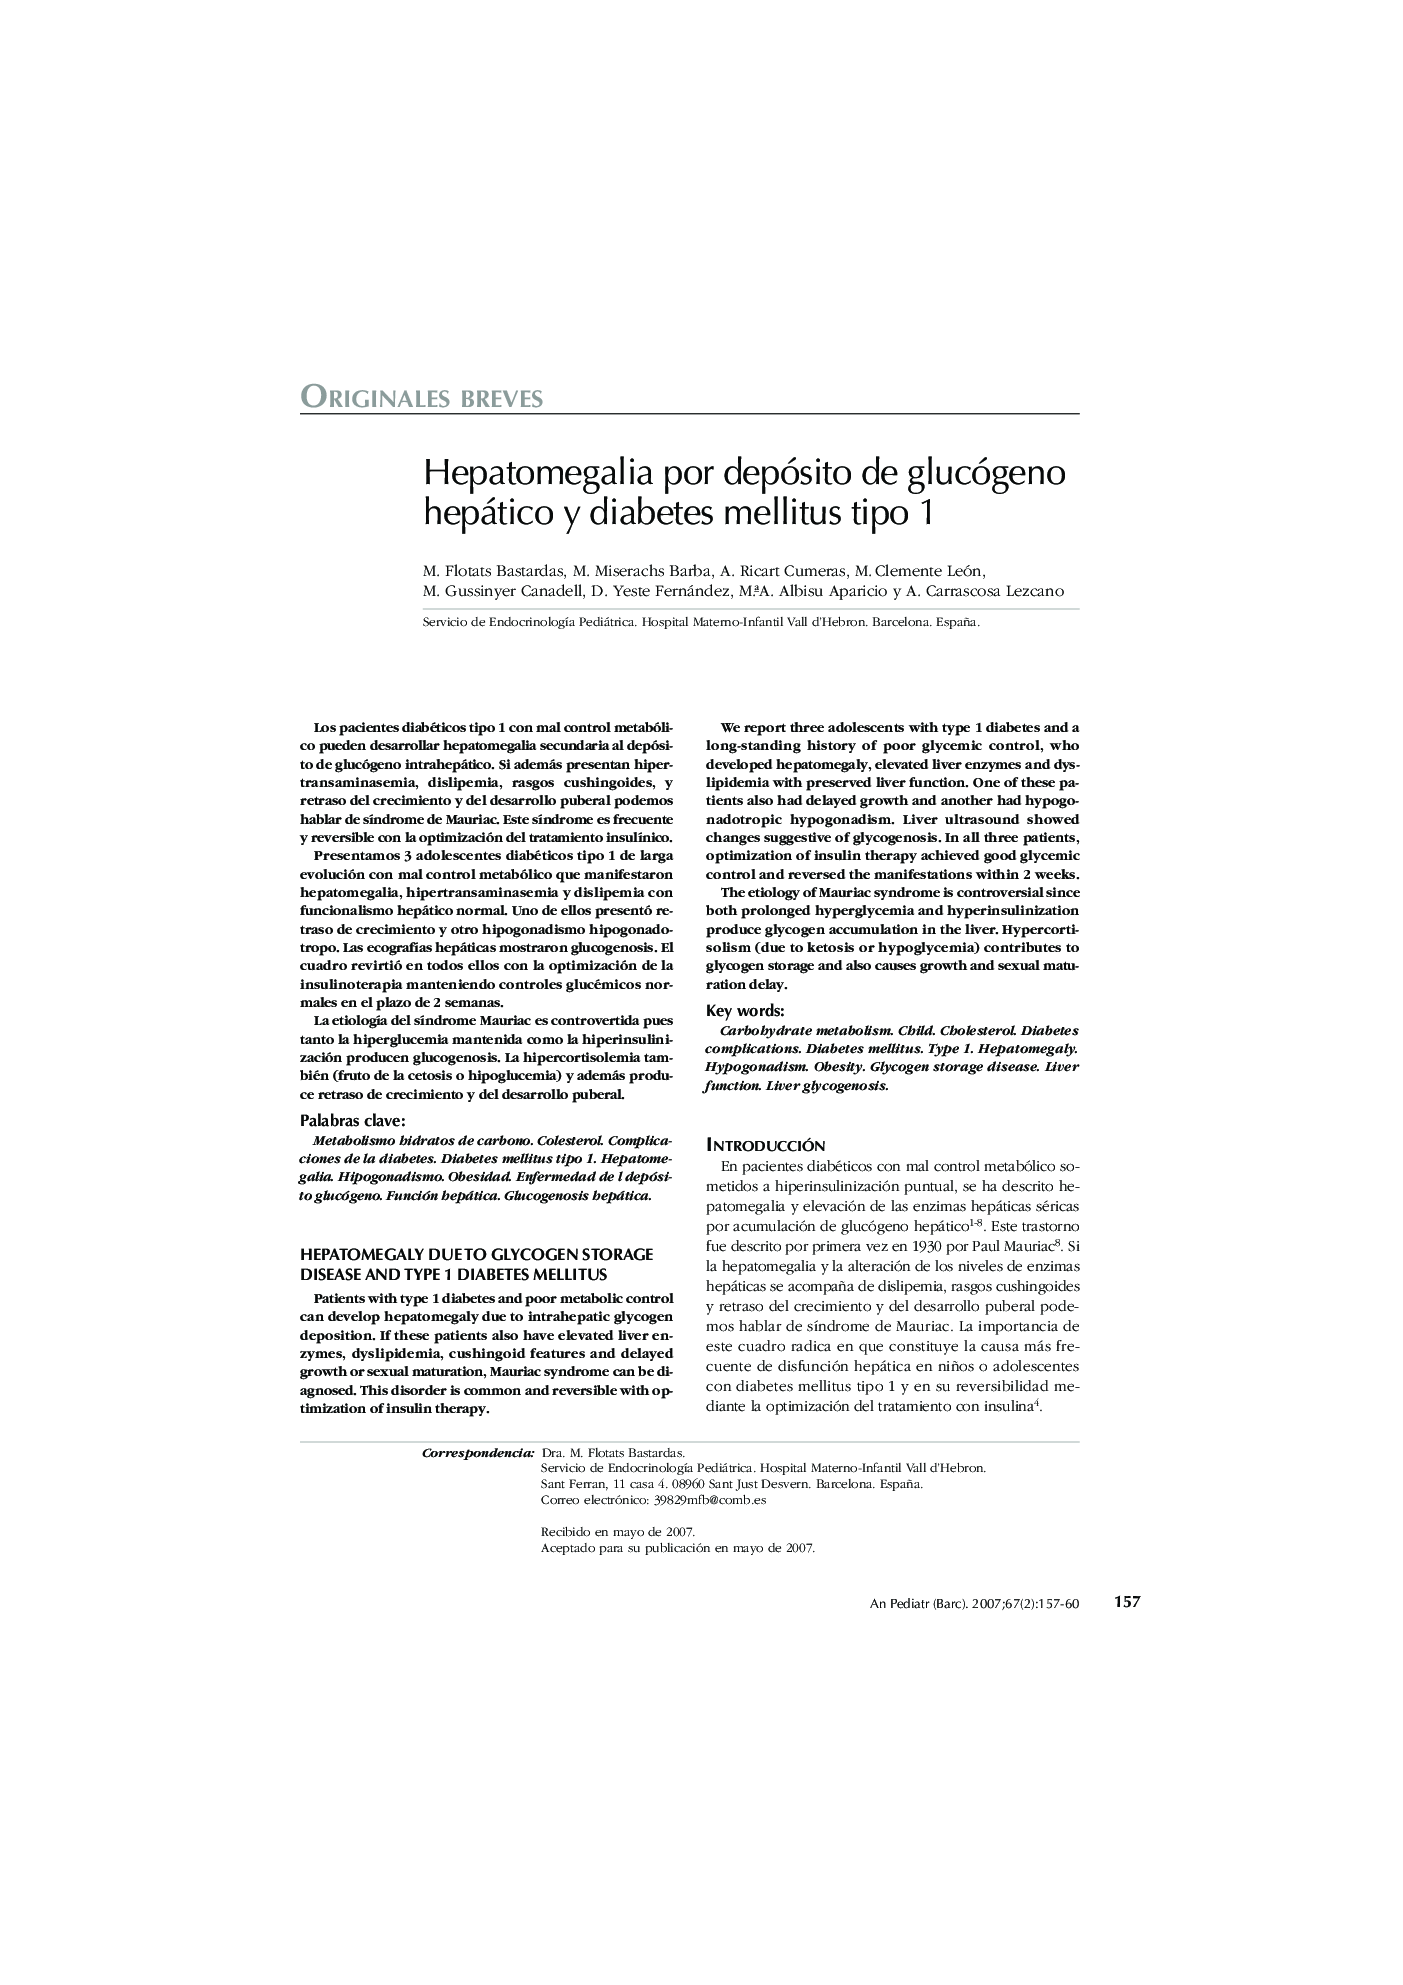 Hepatomegalia por depósito de glucógeno hepático y diabetes mellitus tipo 1